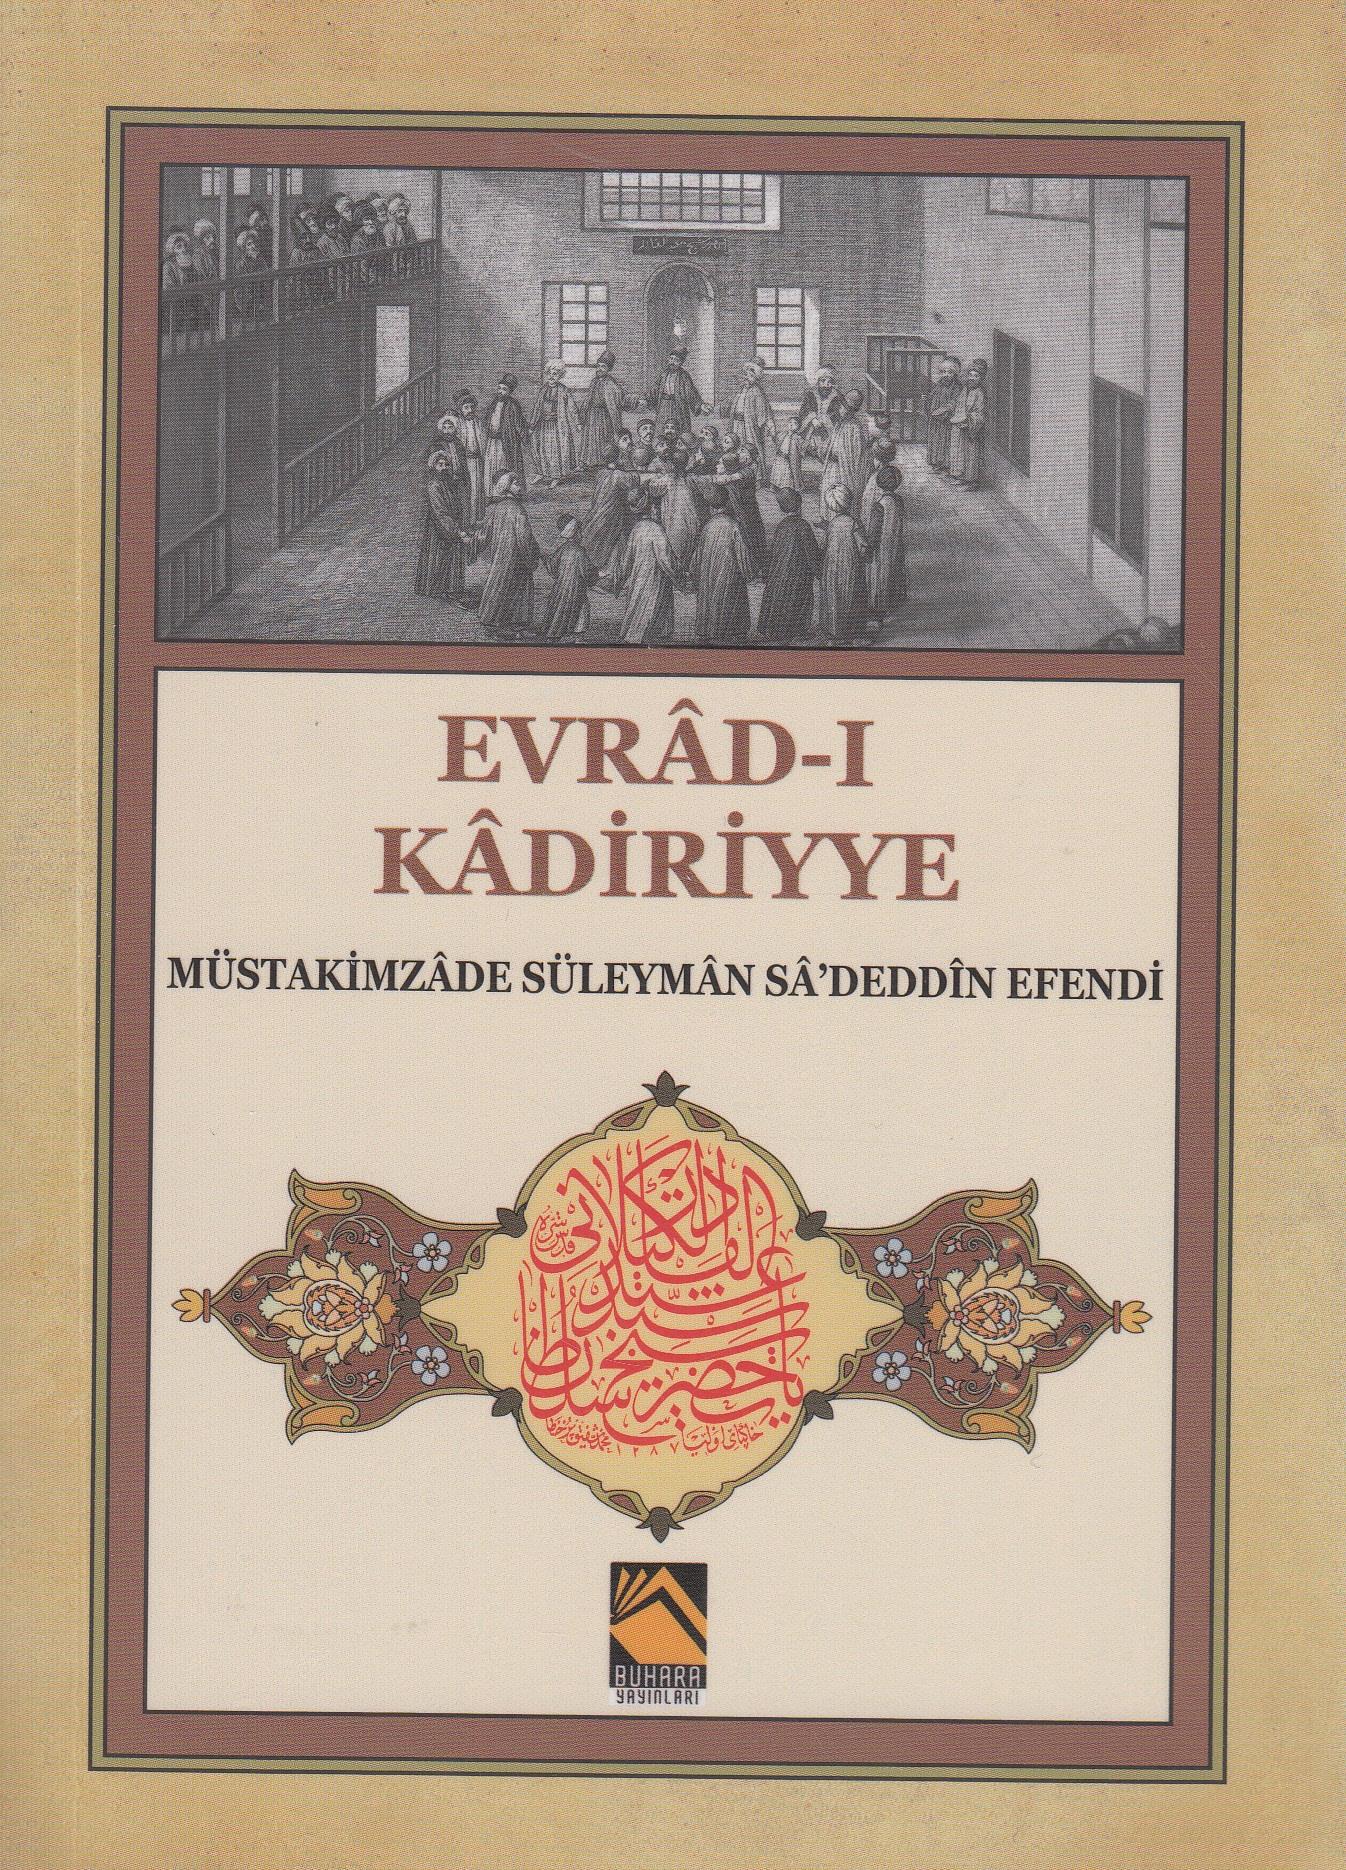 Evrad-ı Kadiriyye